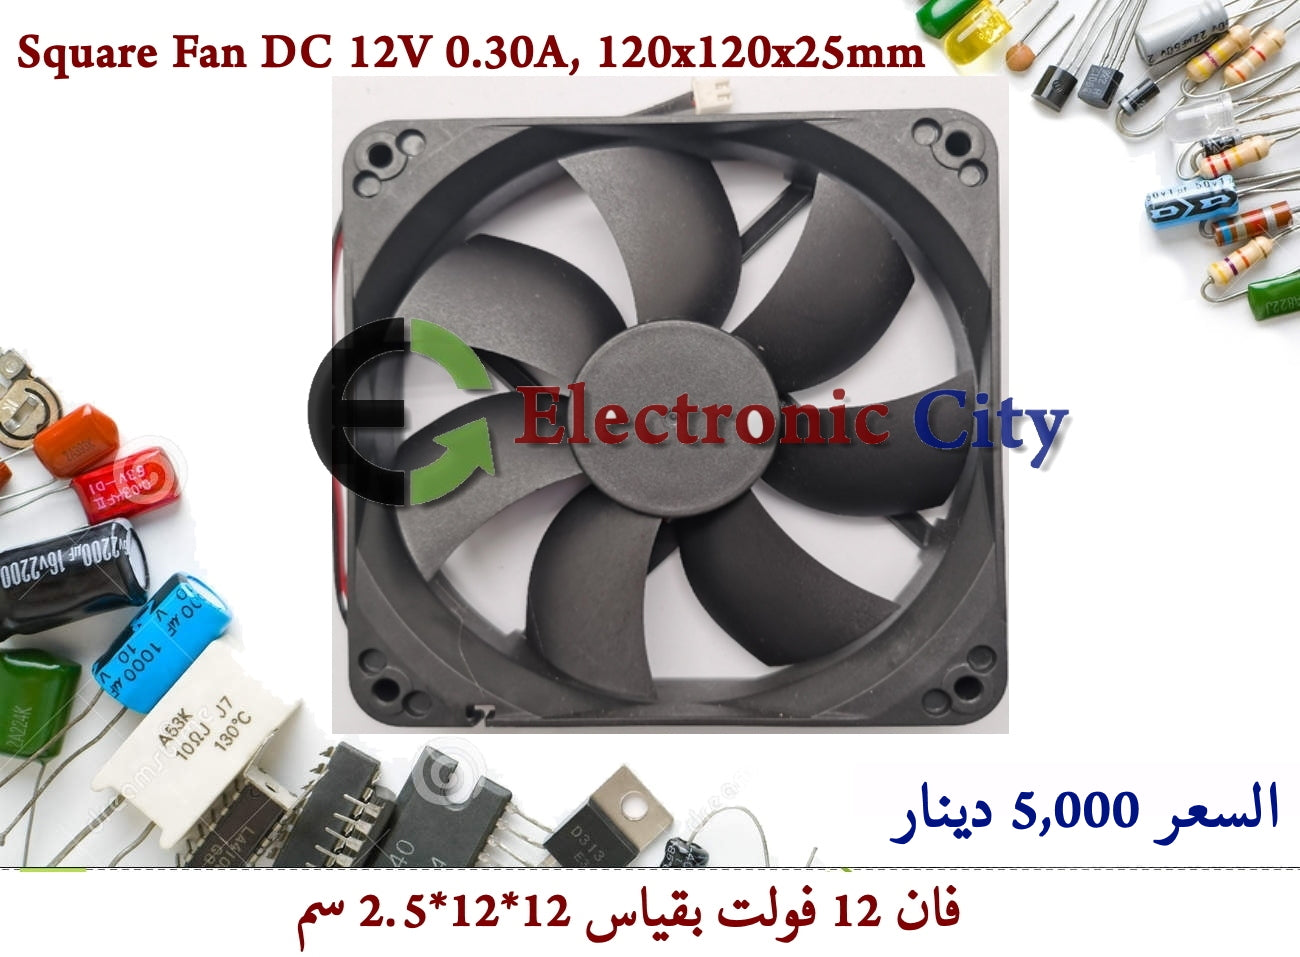 Square Fan DC 12V 0.30A, 120x120x25mm #I8